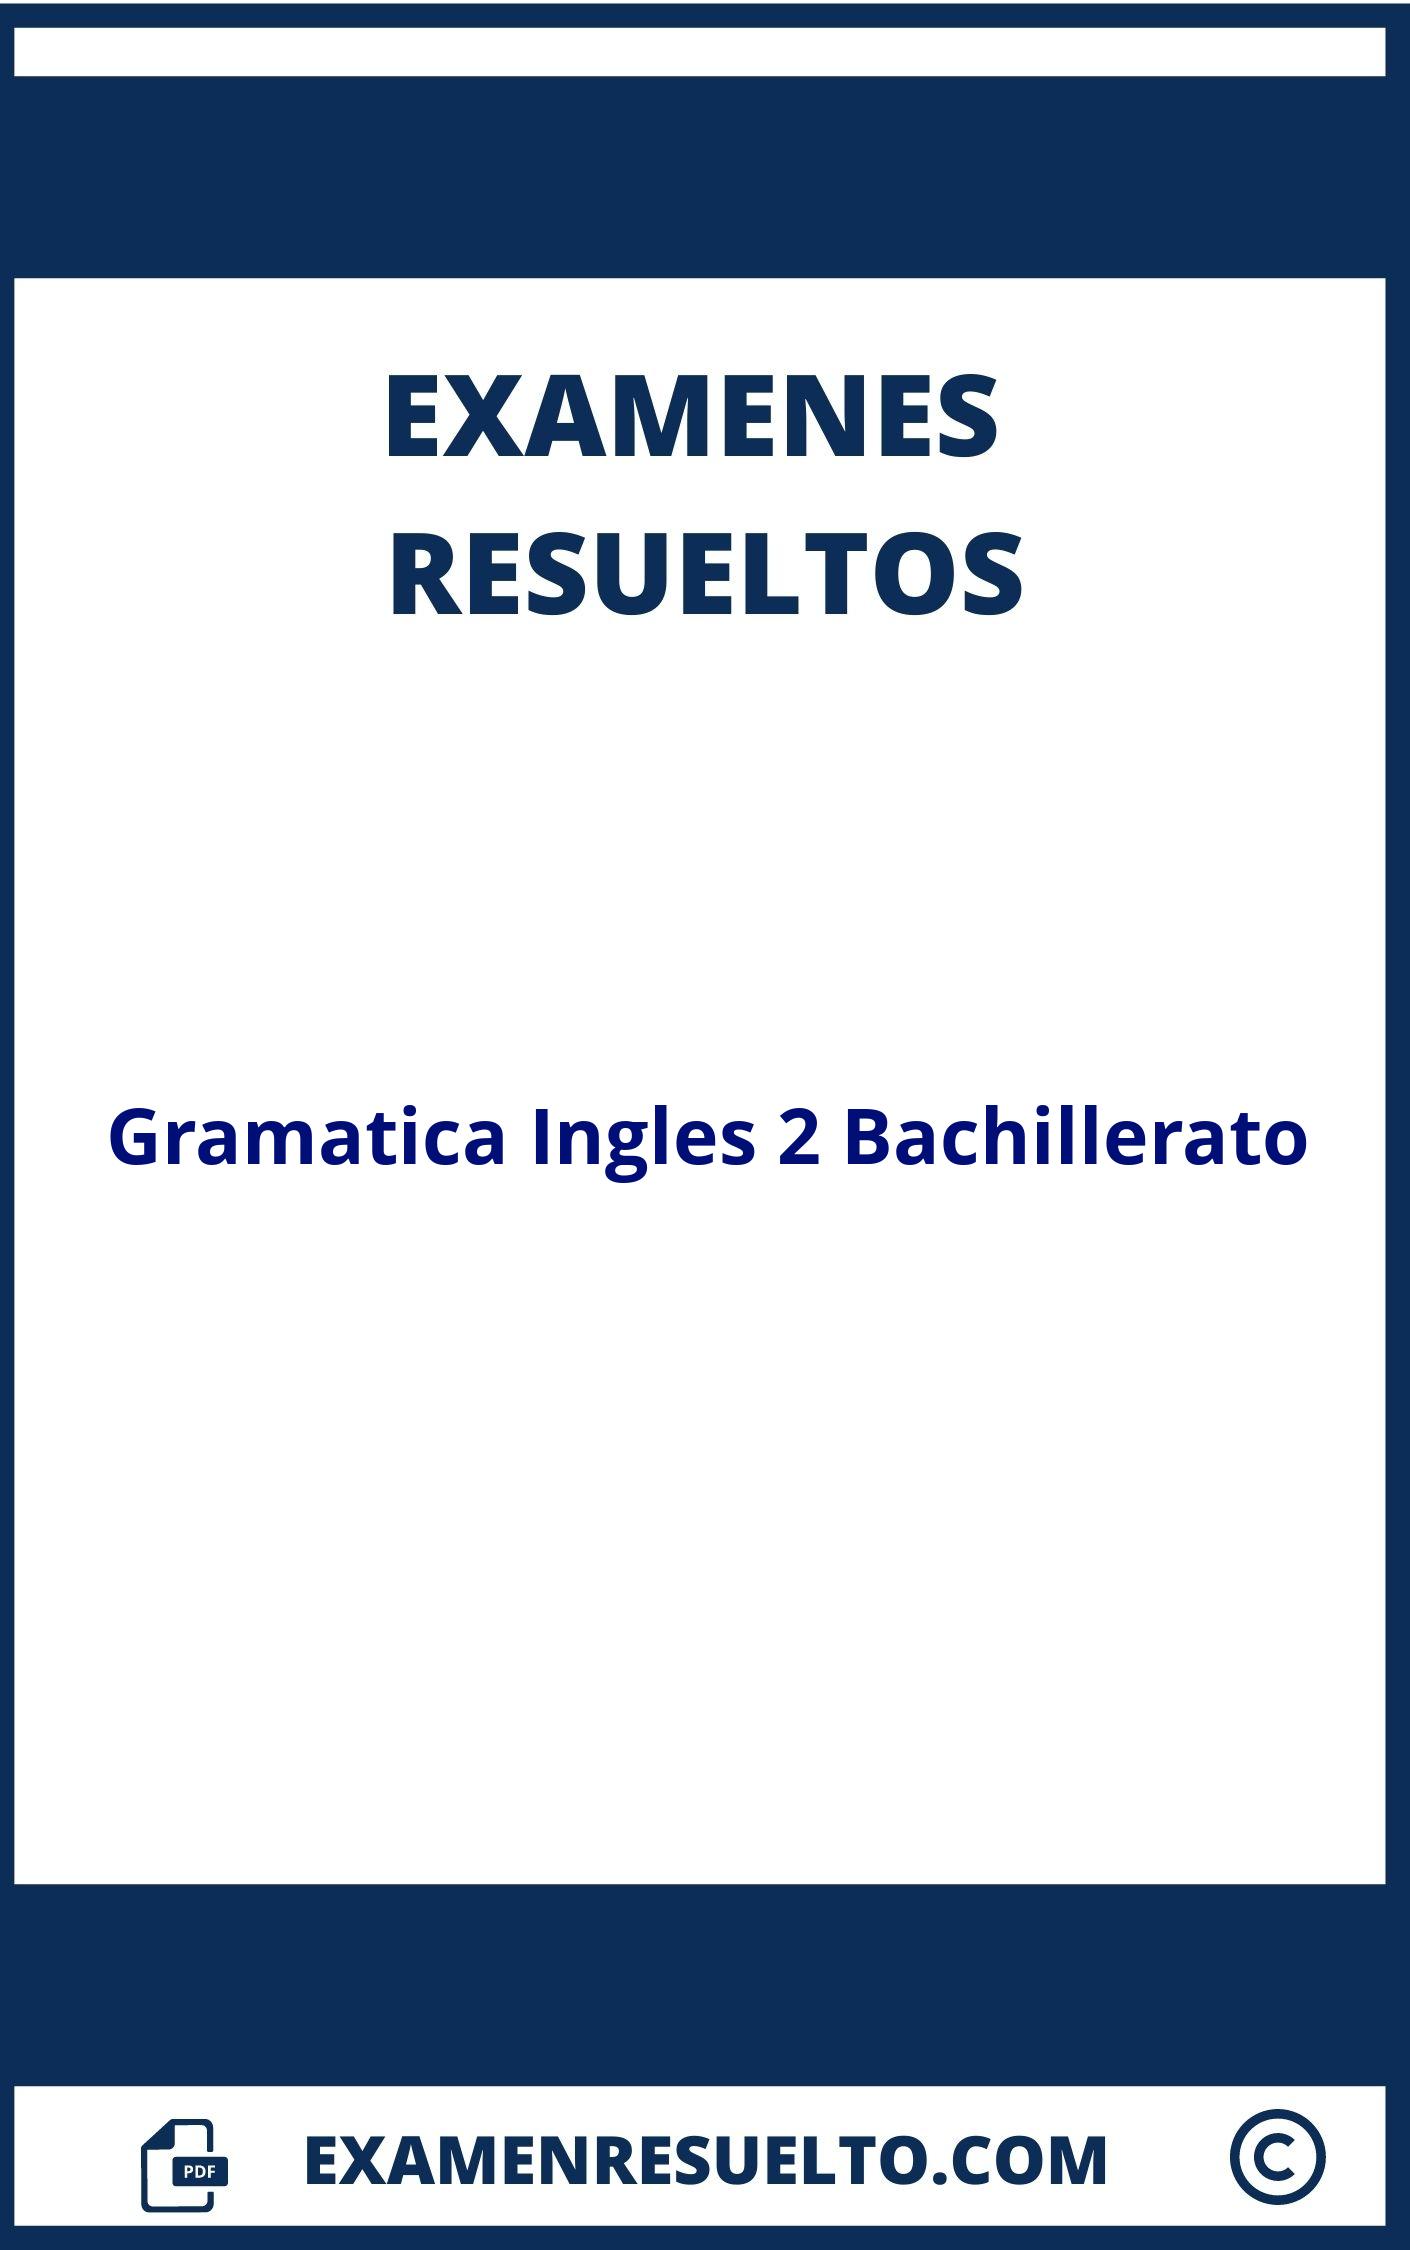 Examenes Gramatica Ingles 2 Bachillerato Resueltos